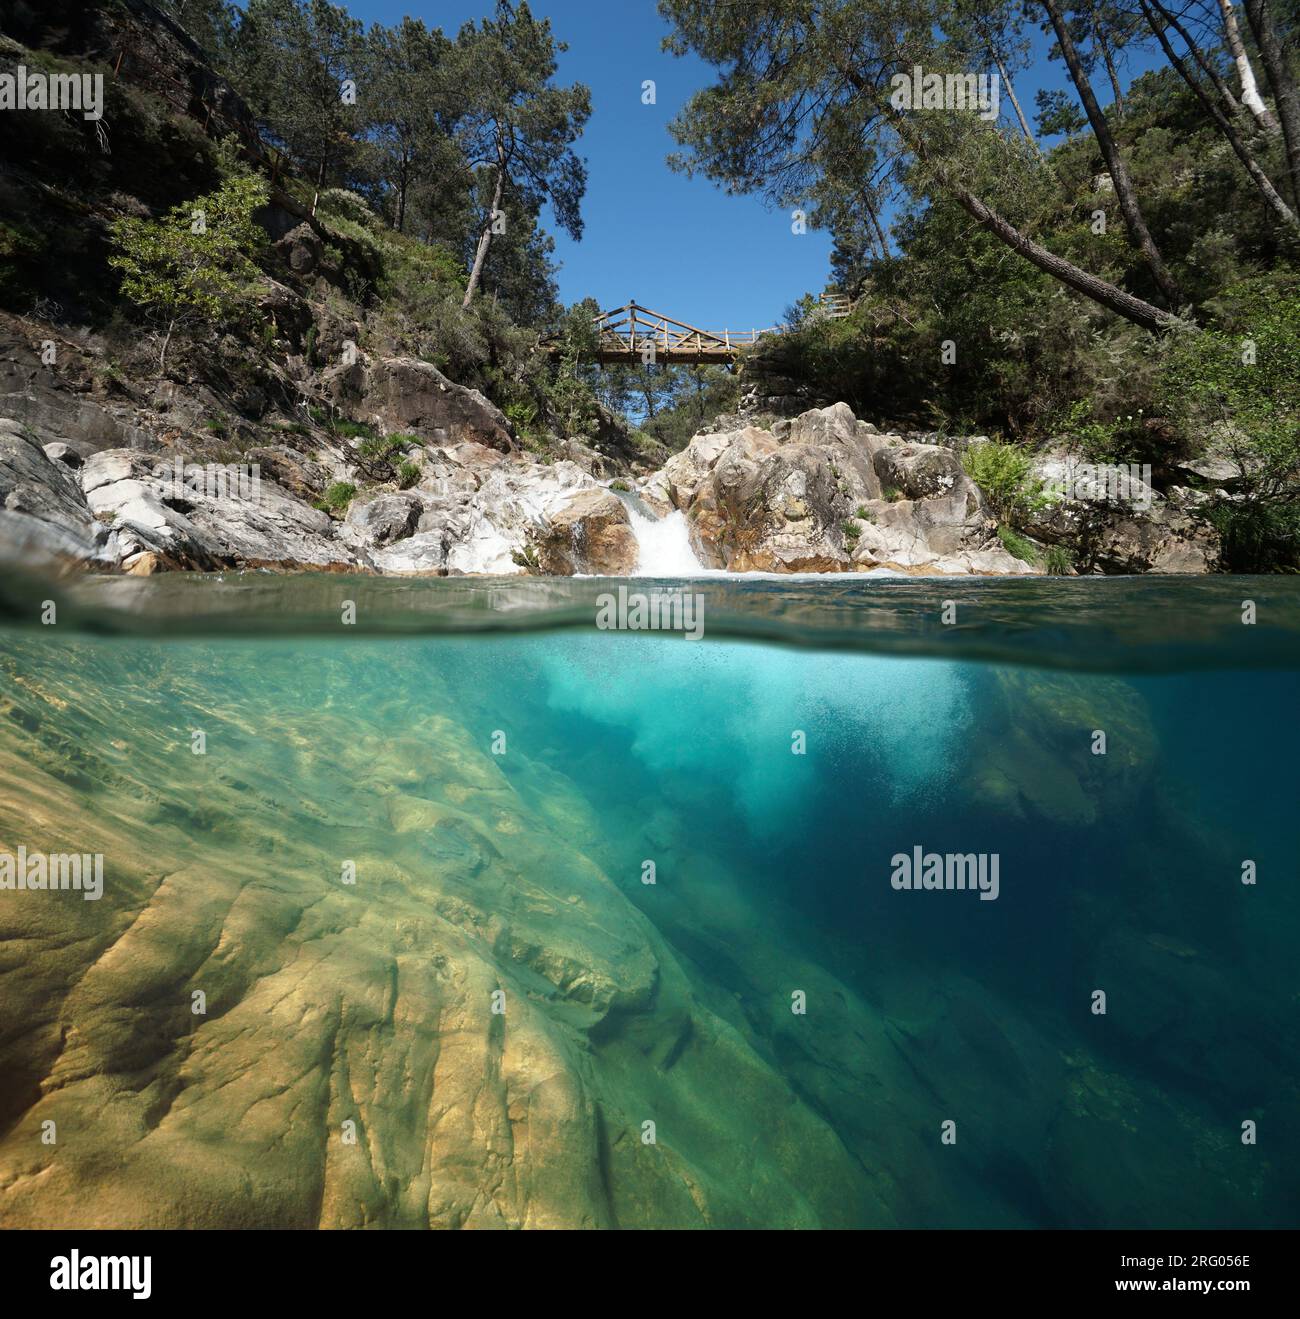 Kaskade mit natürlichem Pool in einem Fluss, geteilter Blick über und unter der Wasseroberfläche, Naturszene, Spanien, Galicien, Pontevedra Provinz, Pozo del Arco Stockfoto